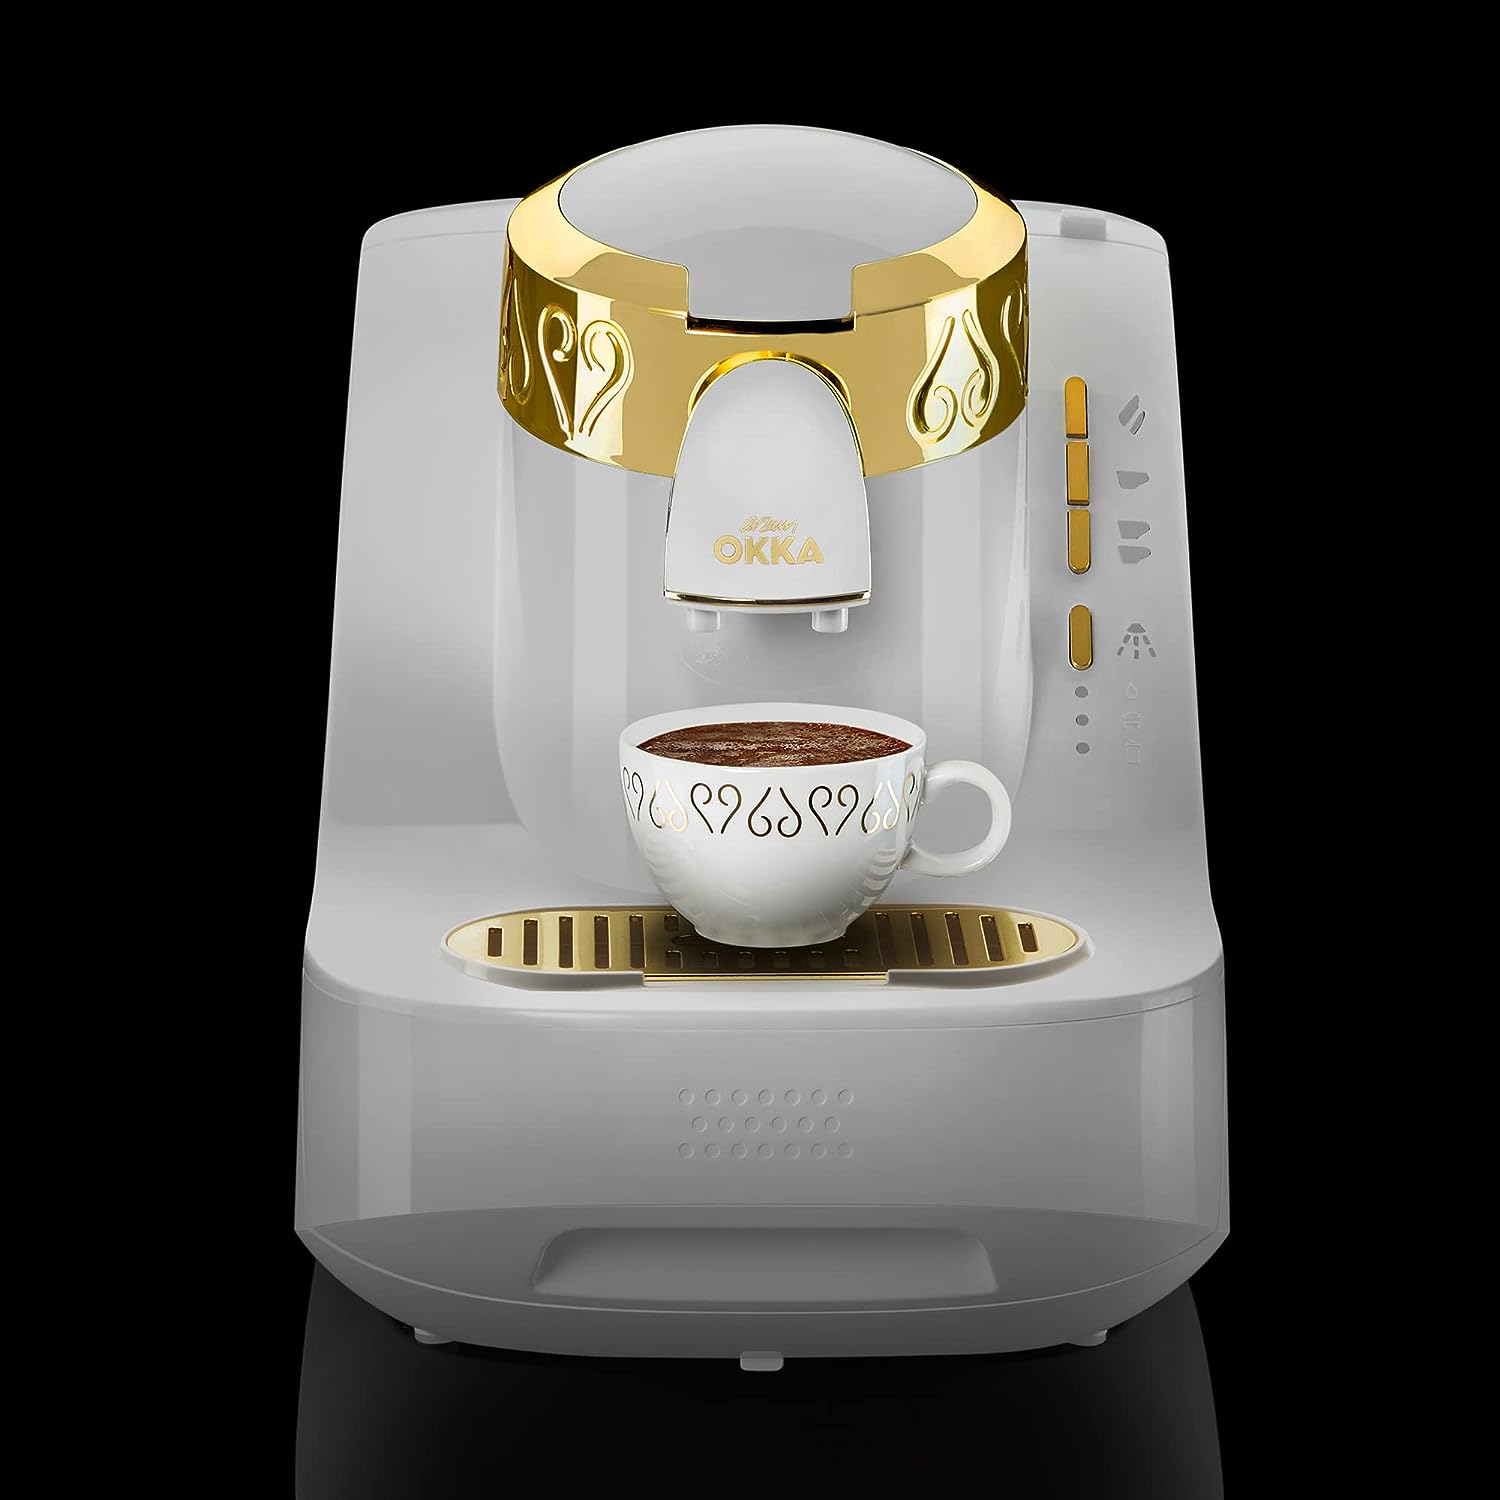 ماكينة تحضير القهوة التركي ارزوم اوكا ، 710 وات ، أبيض x ذهبي ،OK008B